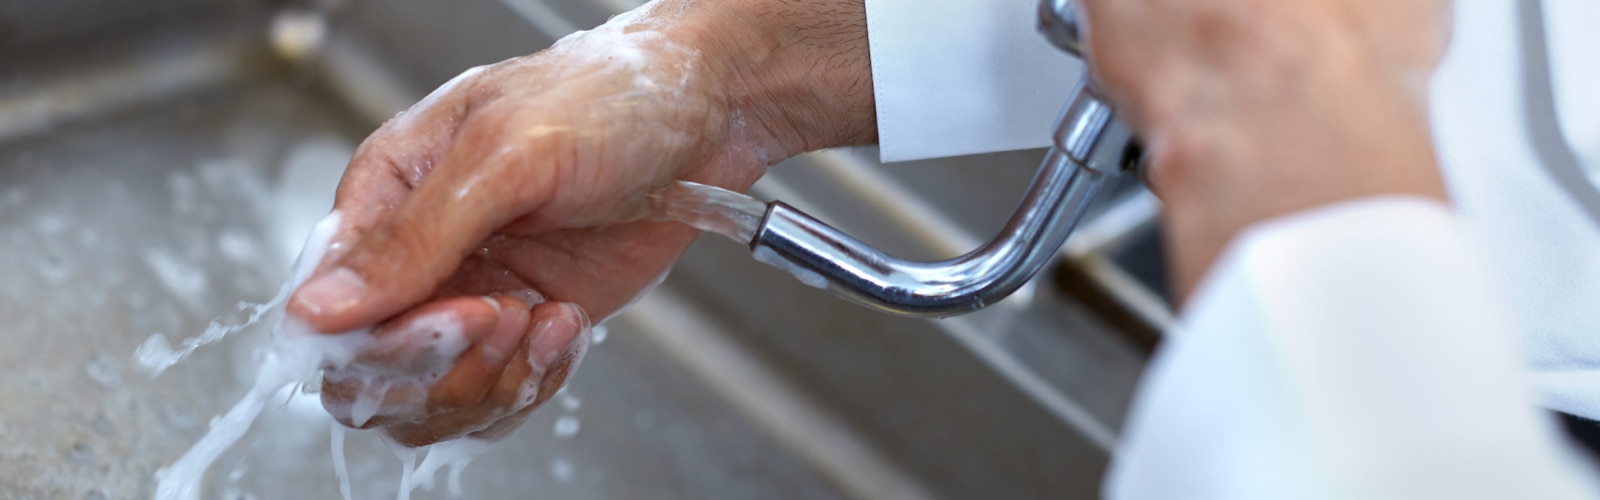 Мытье рук в ресторанах и на предприятиях общественного питания